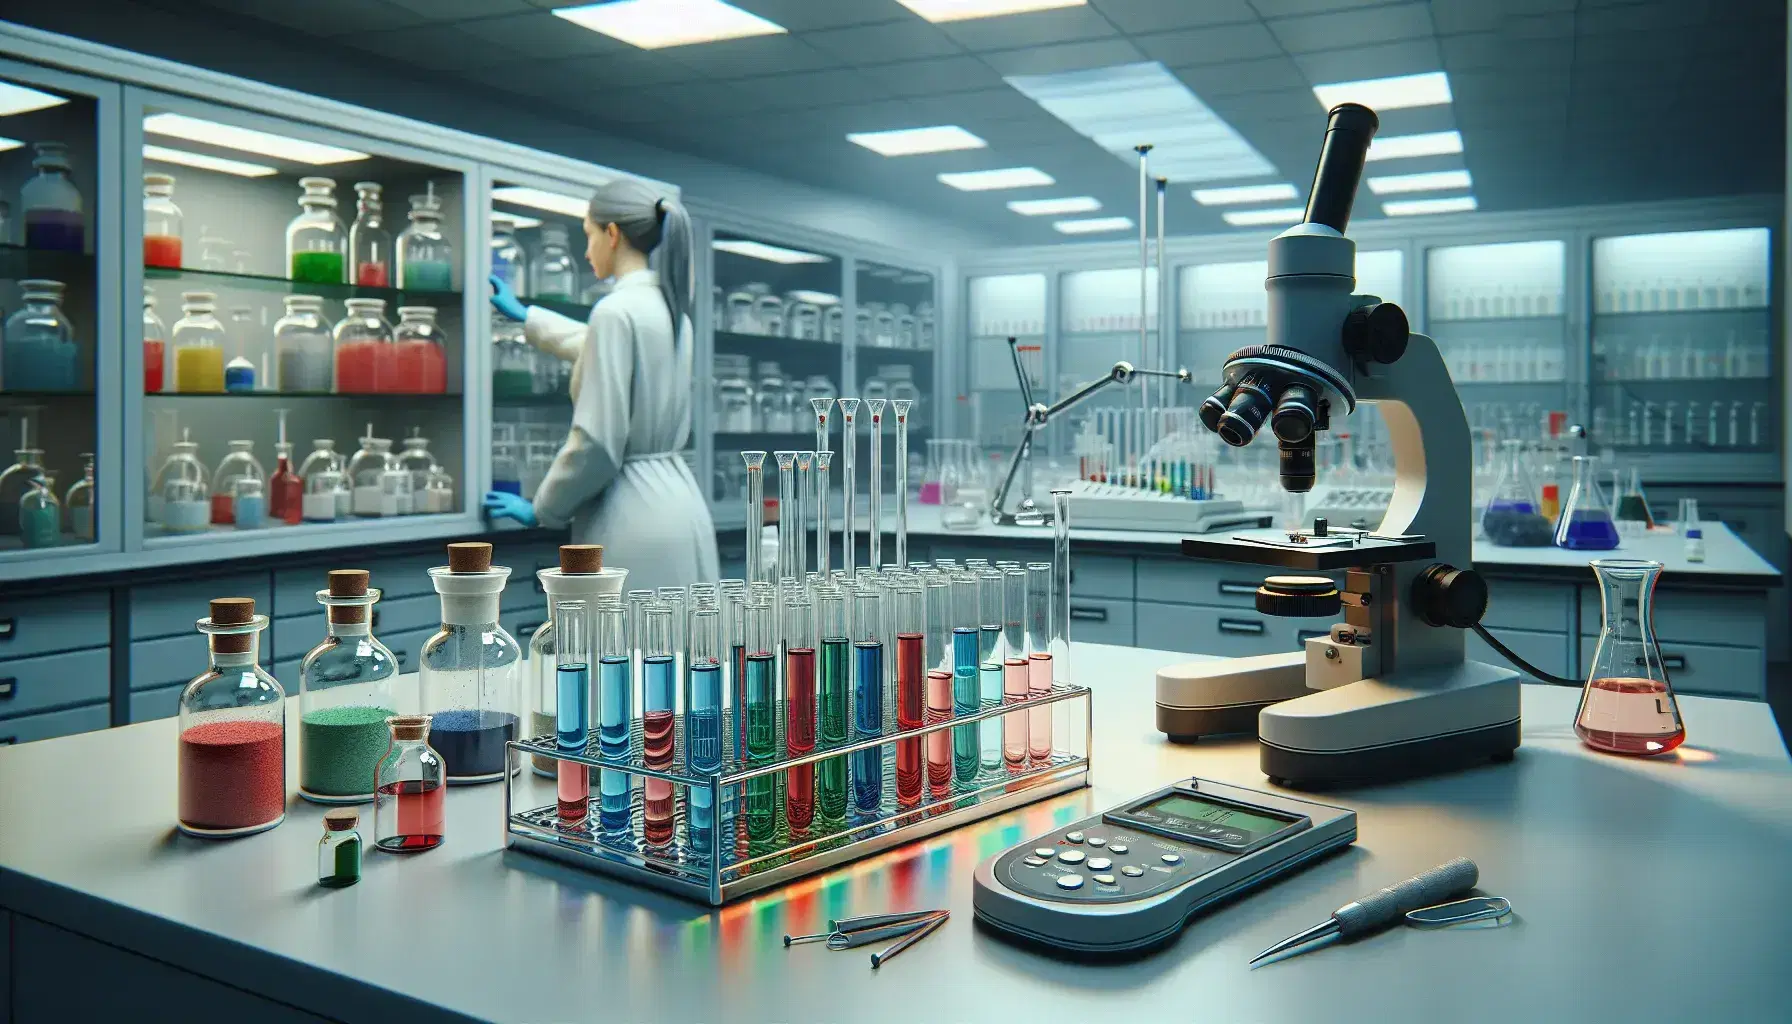 Laboratorio científico con tubos de ensayo de colores en soporte metálico, microscopio, balanza analítica y técnico examinando muestras.